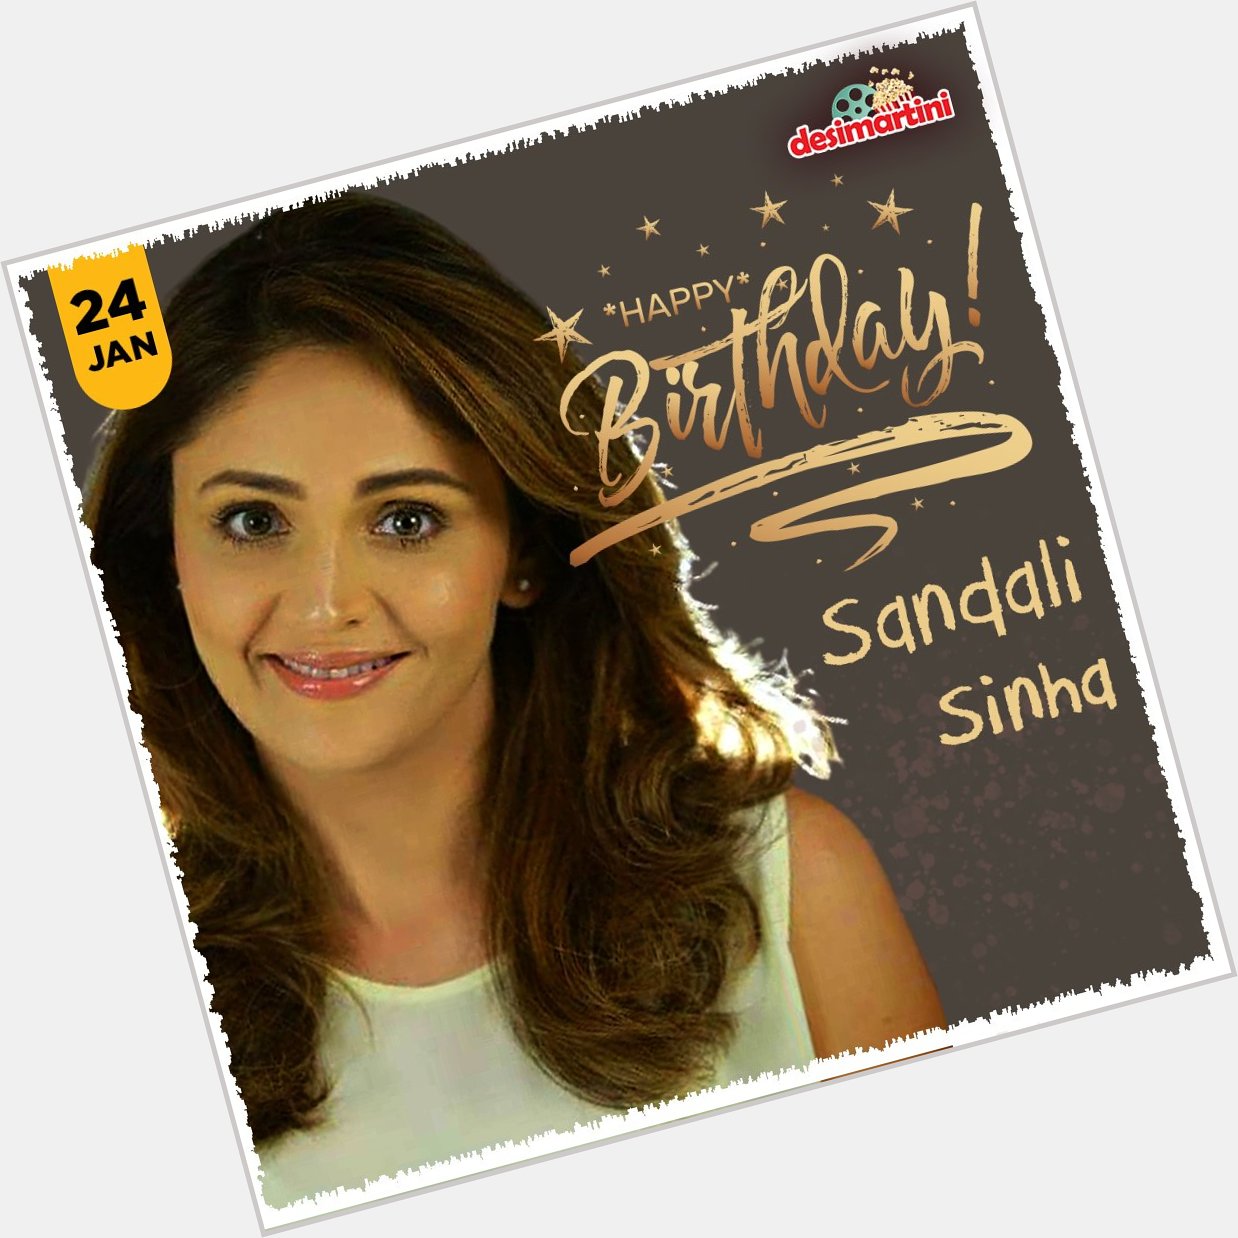 Happy Birthday Sandali Sinha!   